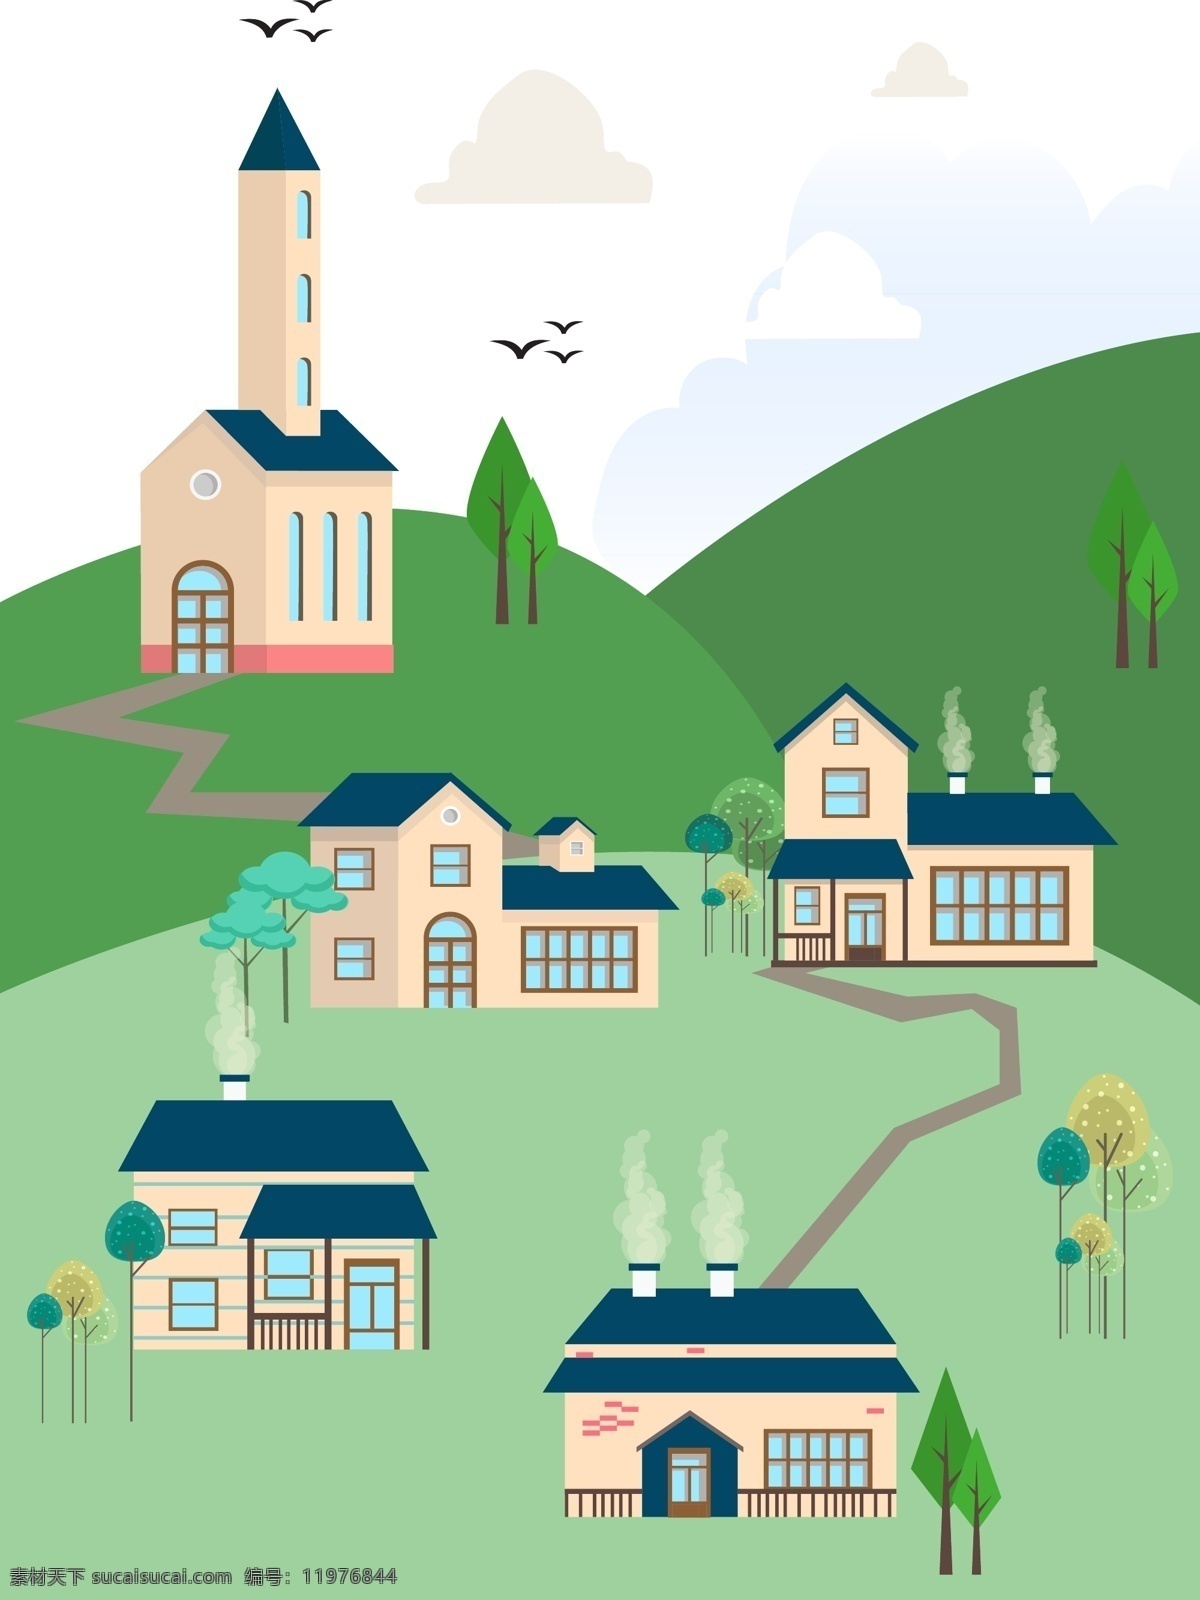 手绘 别墅区 房子 矢量图 卡通的 小清新 别墅 小屋子 植物 树 云朵 插画 绘画 海报 野外 山上